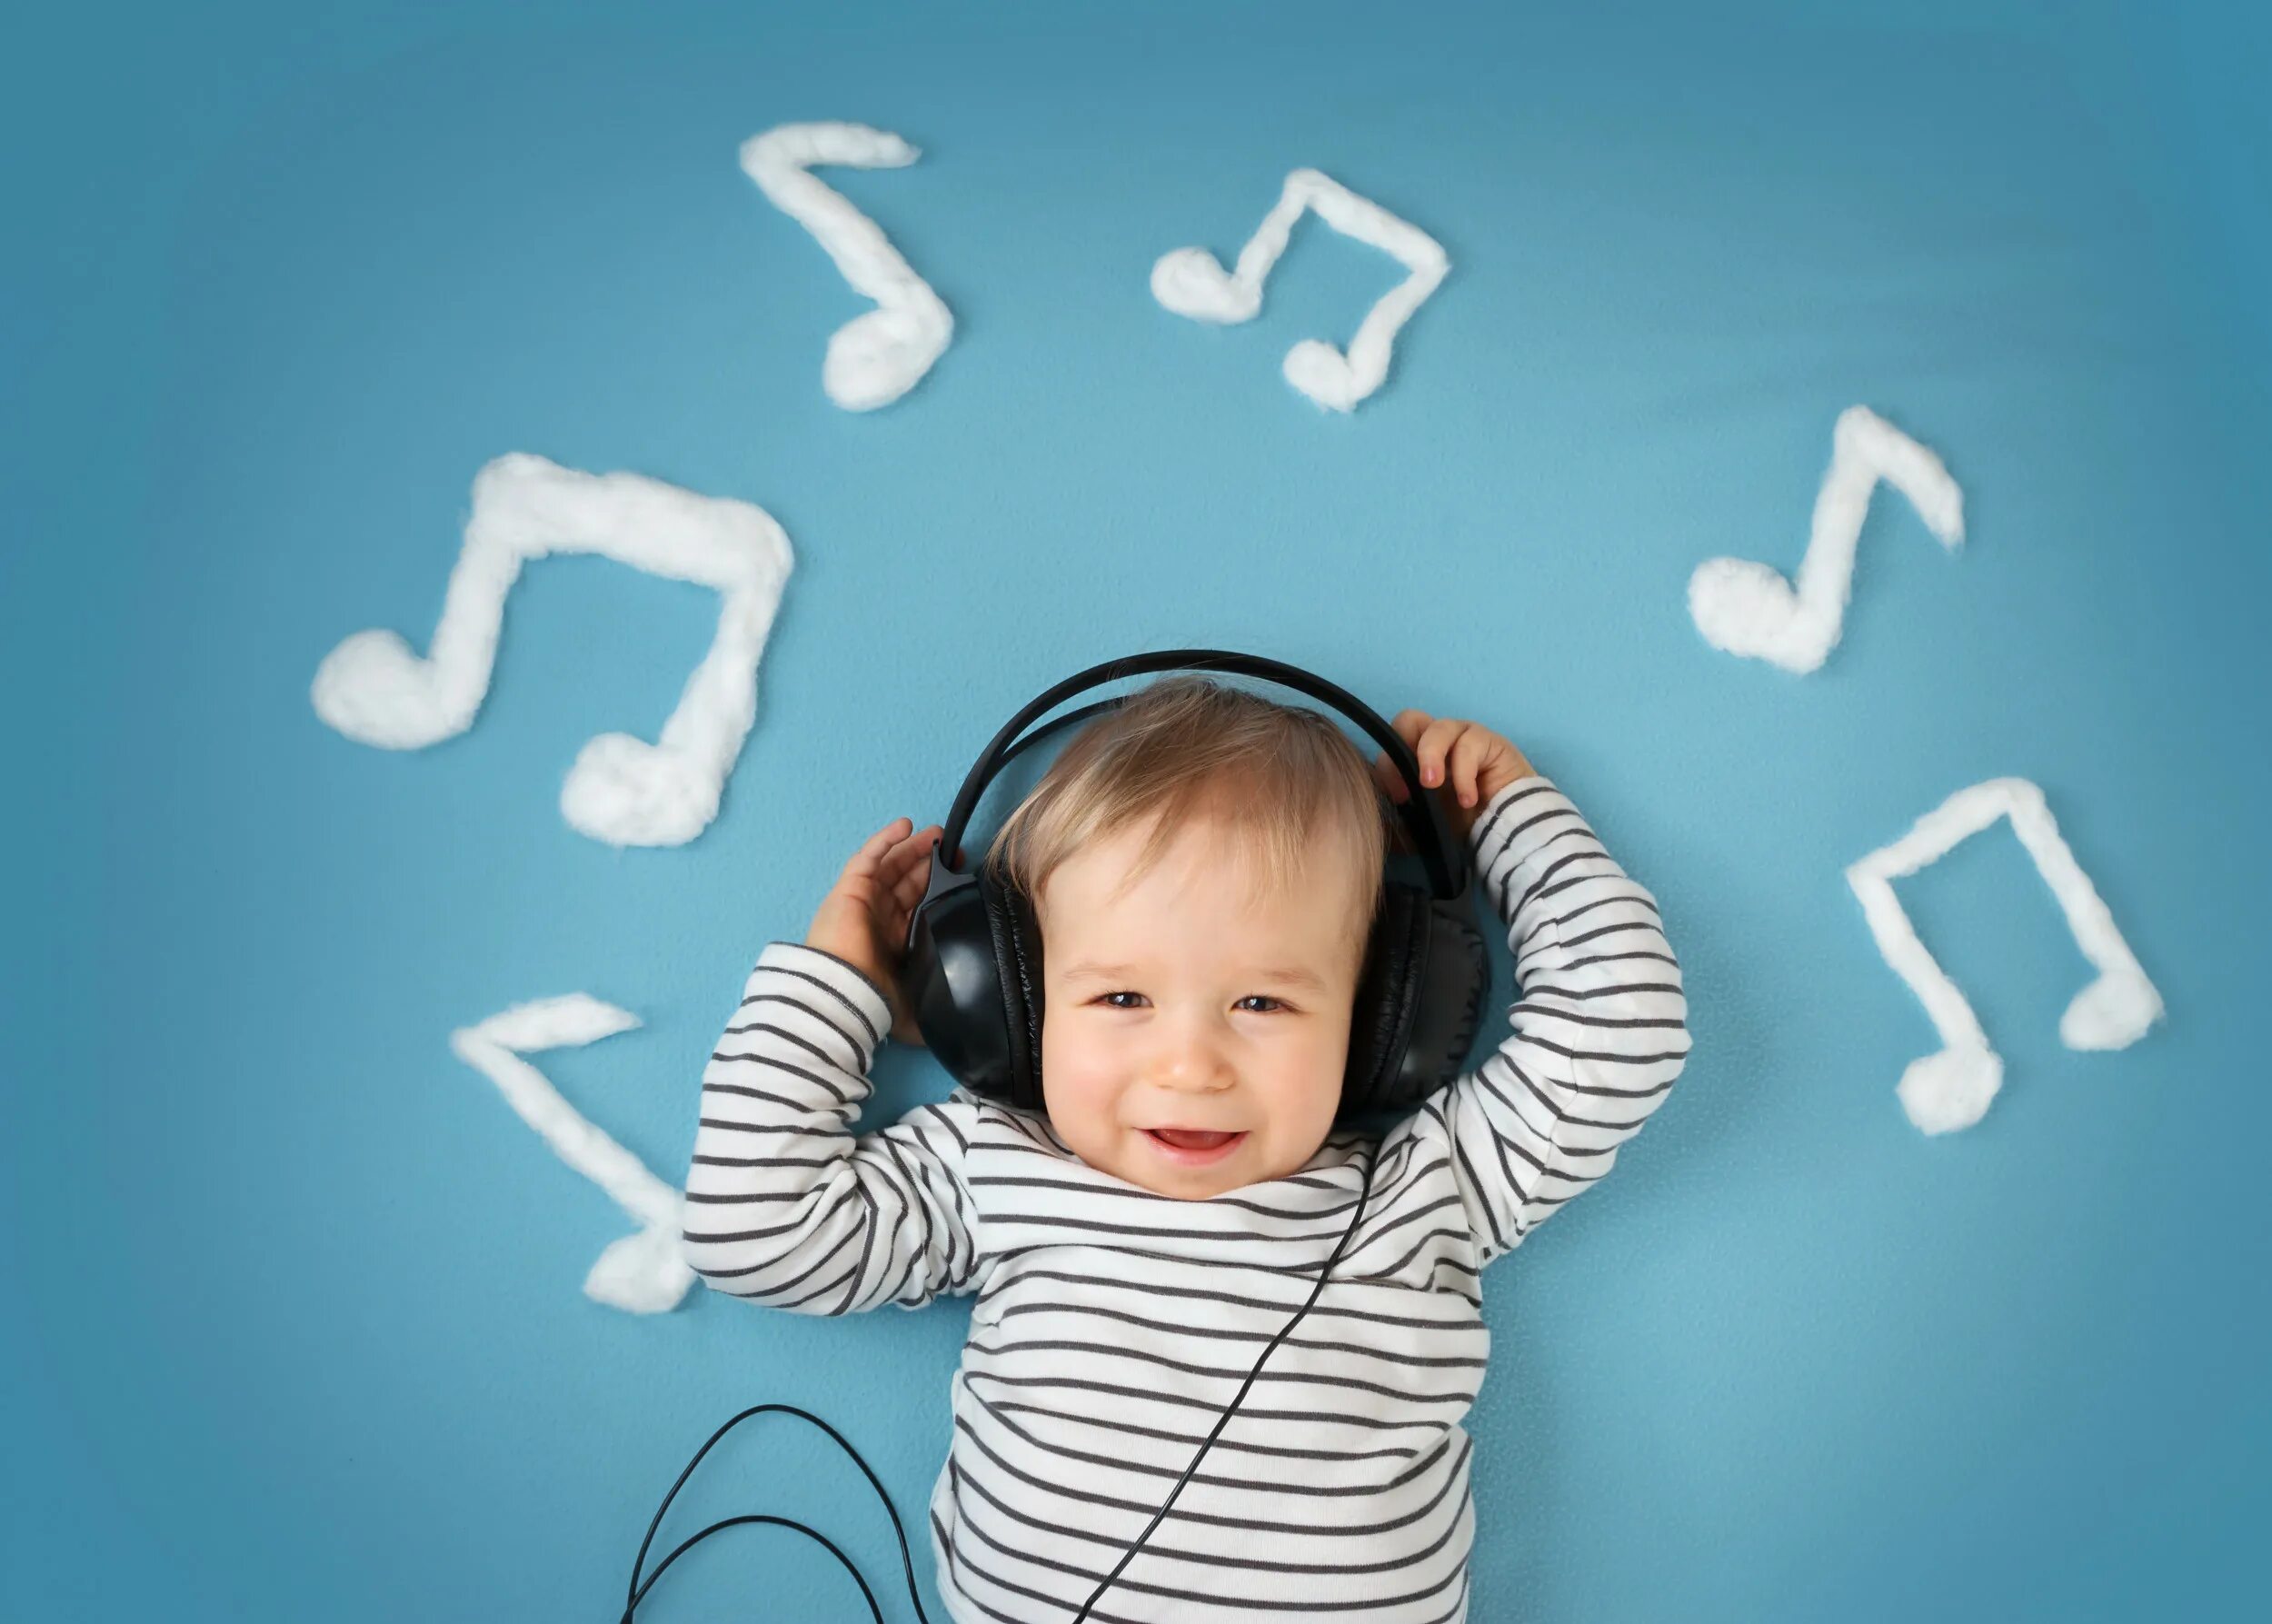 Можно детскую музыку. Дети СЛУШАЮТ музыку. Ребёнок слушаетмузыку. Шум детей. Музыкальный слух.